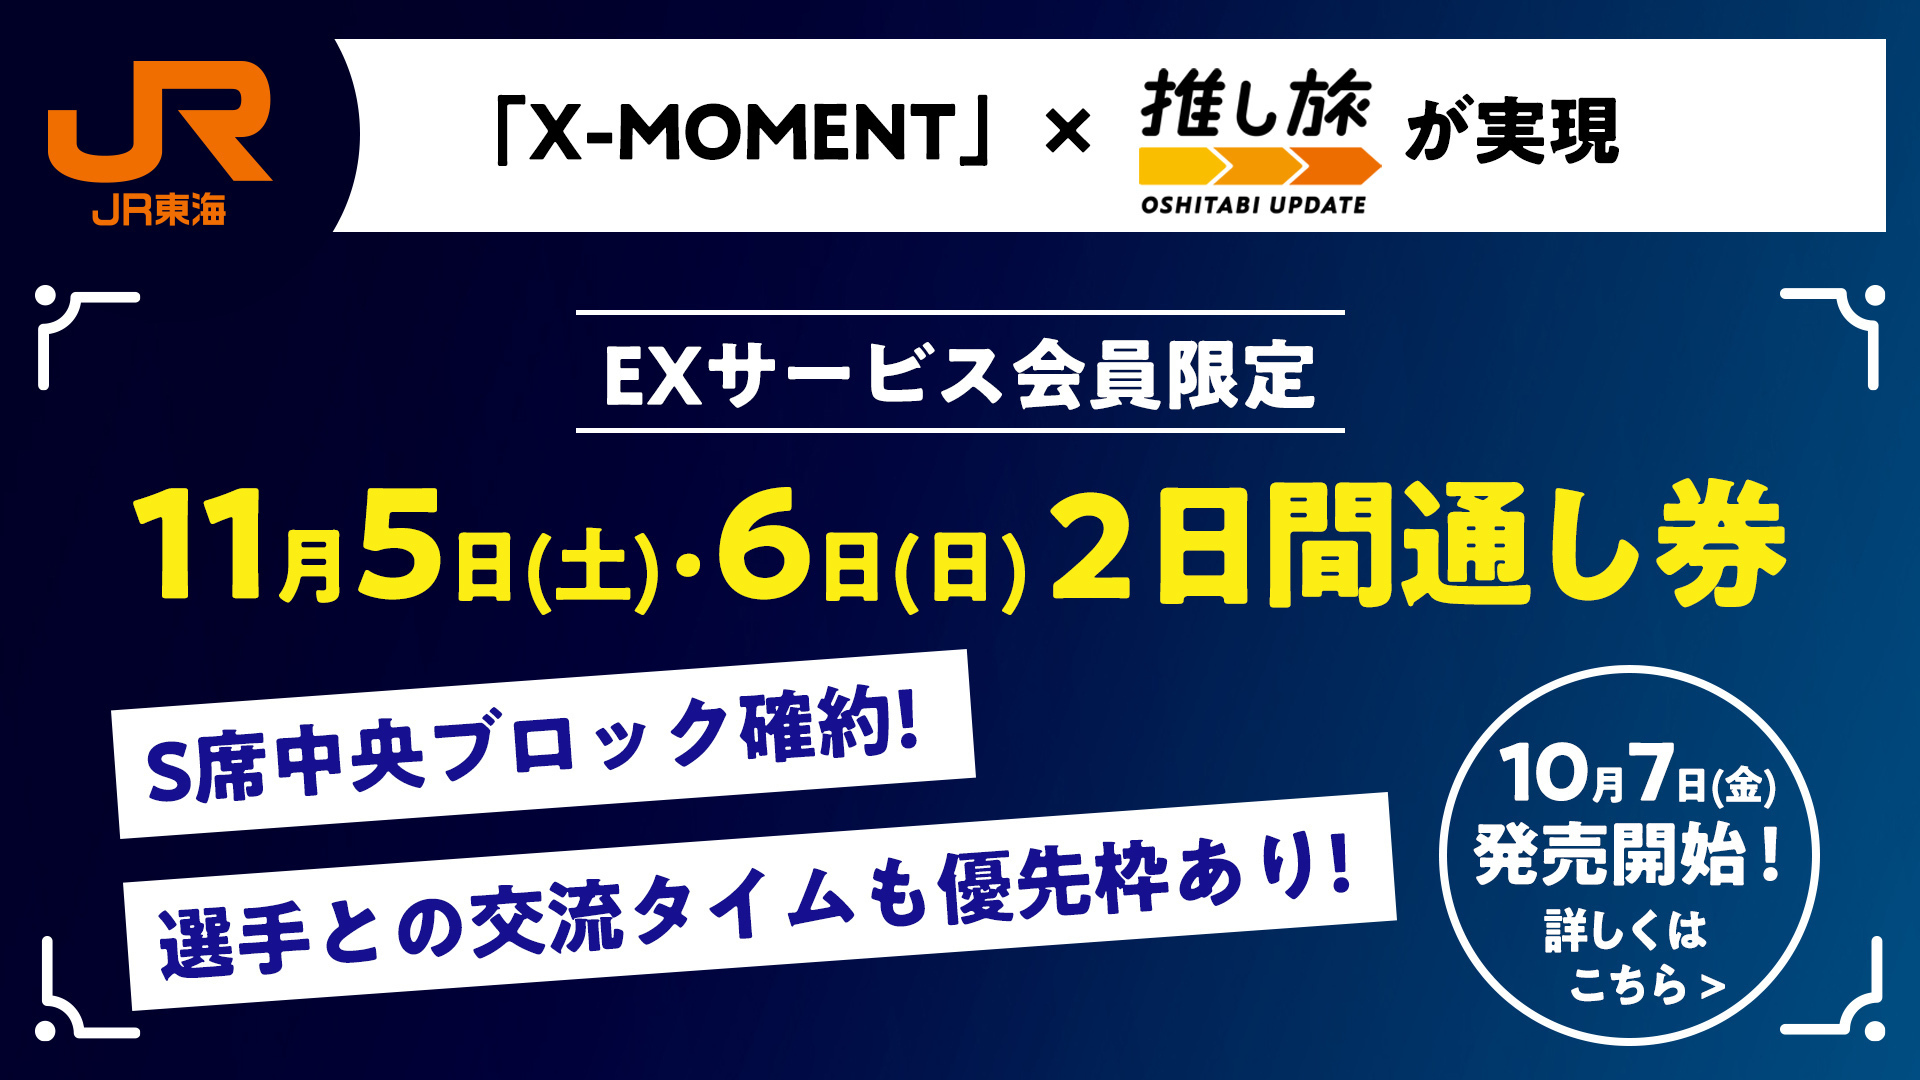 新幹線とS席チケットがセットになった観戦プラン『「X-MOMENT」✕推し旅』